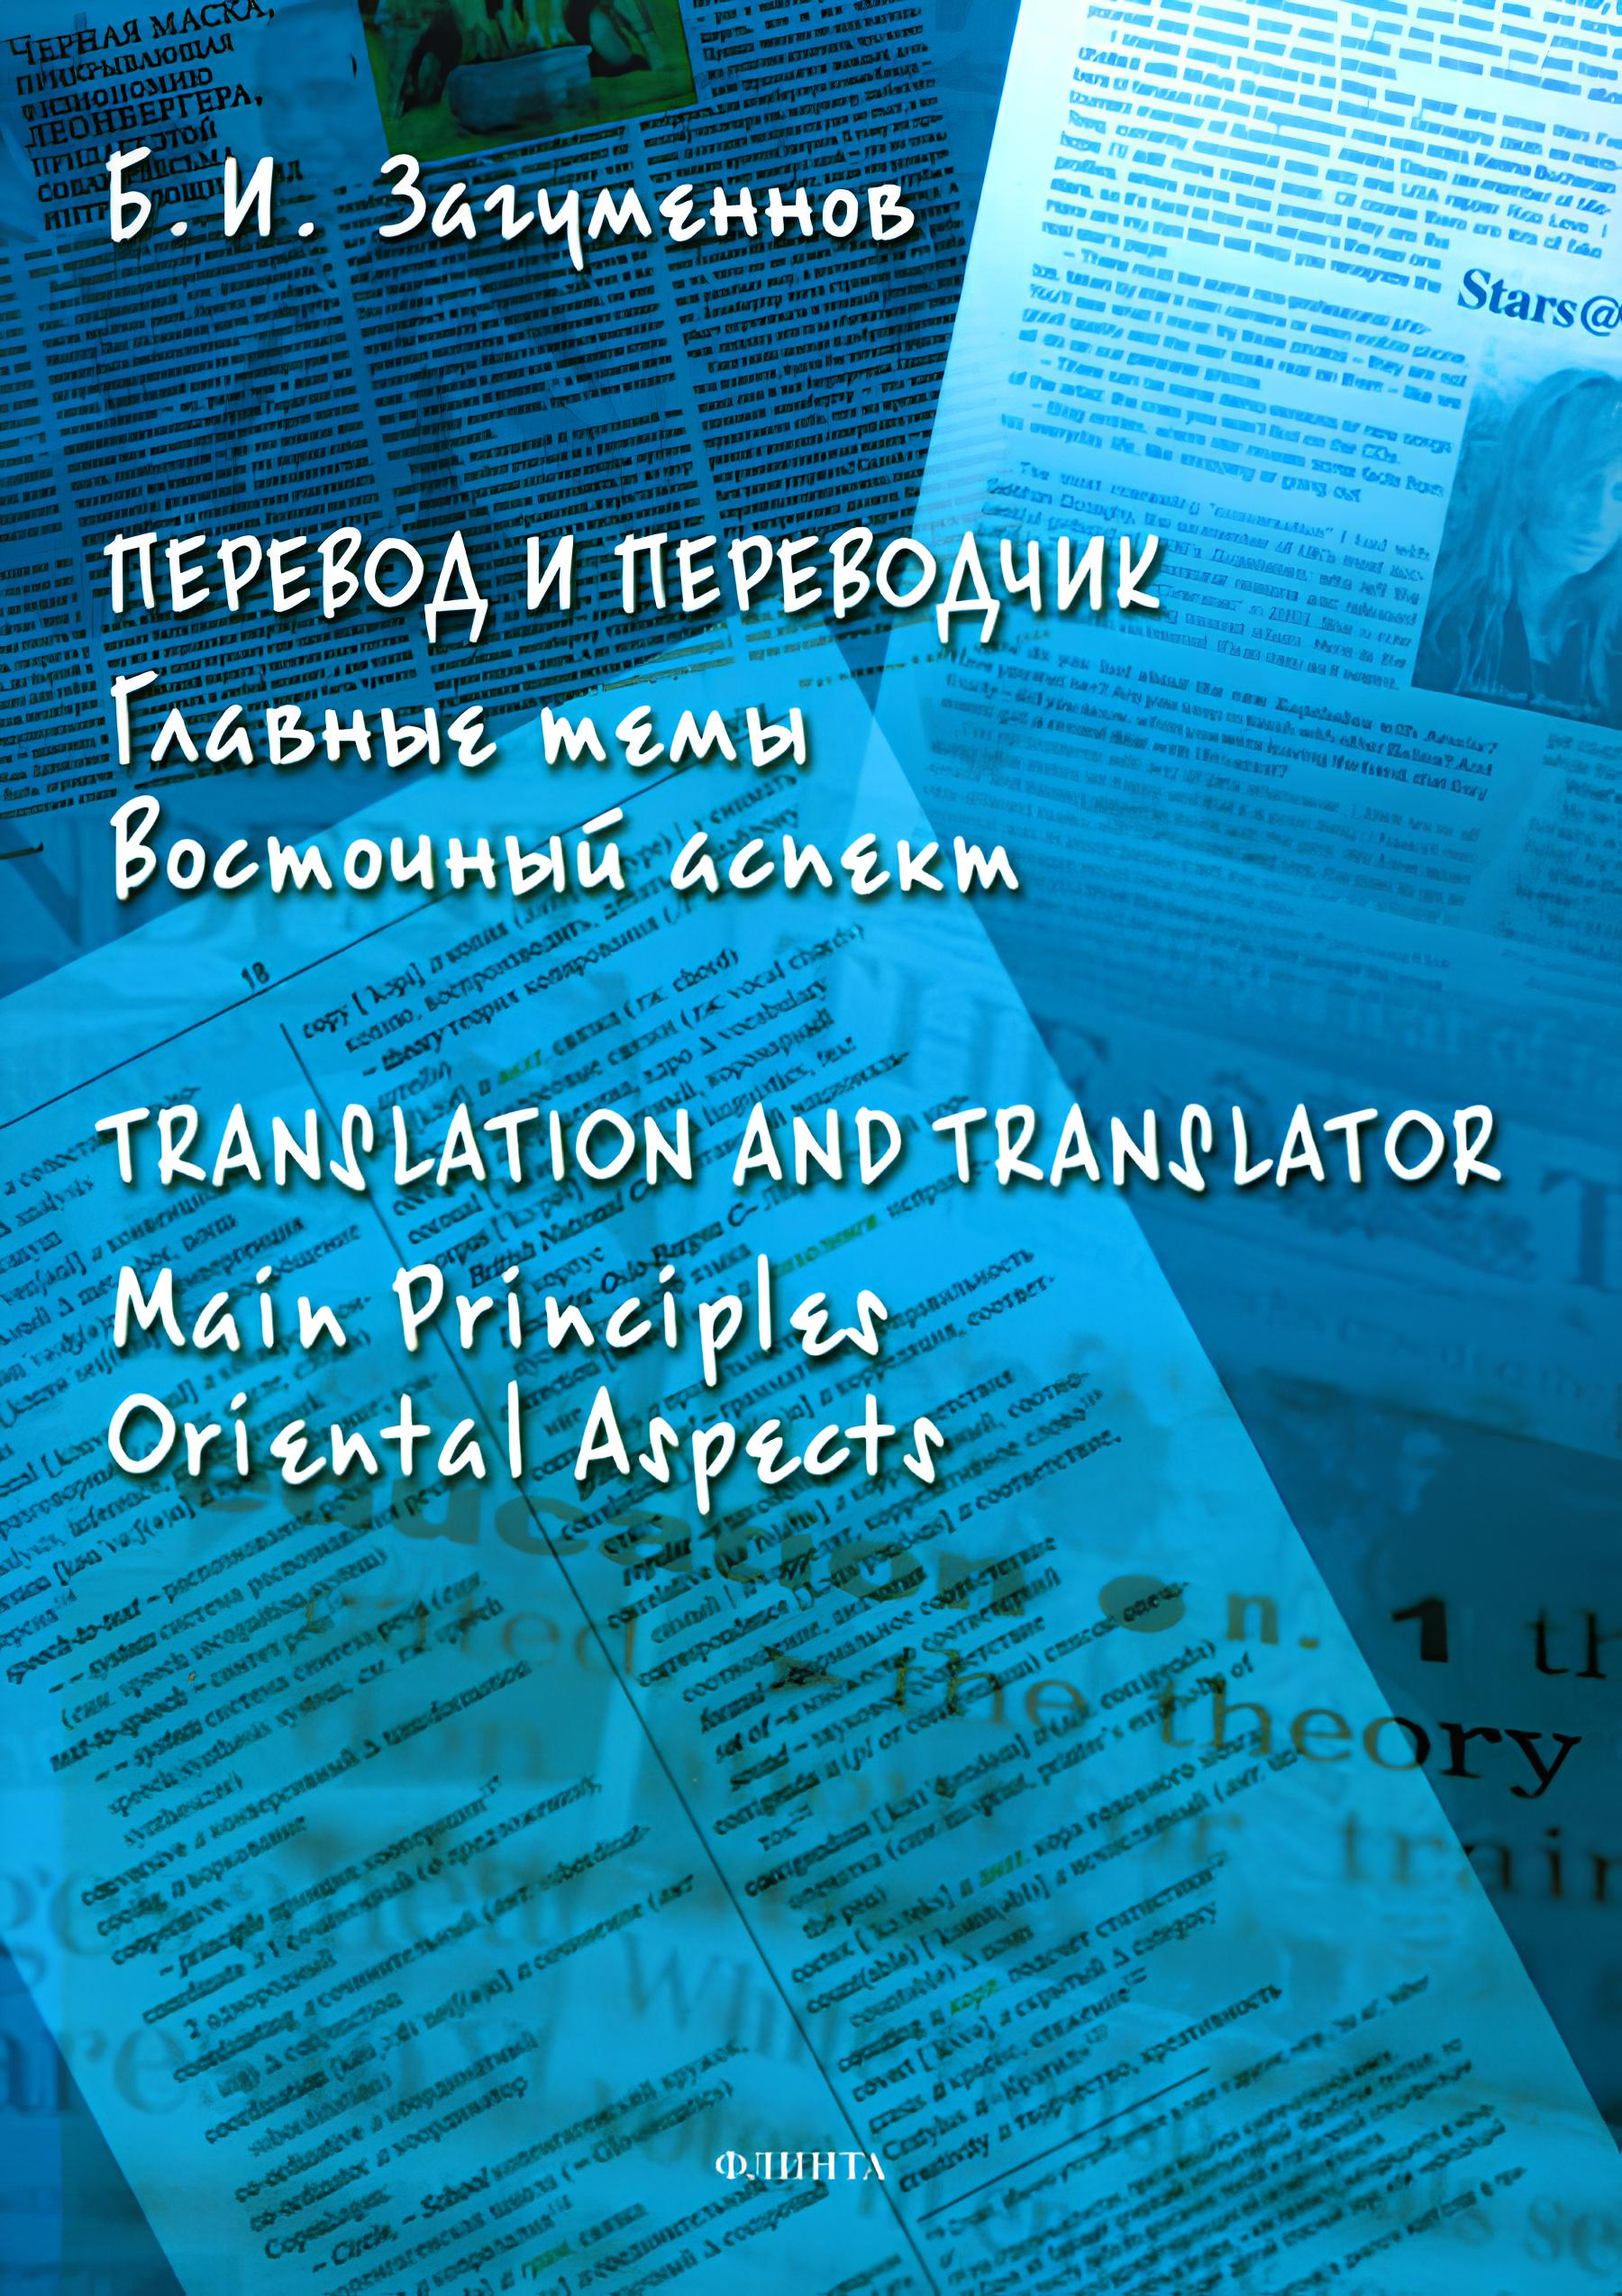 "Перевод и переводчик. Главные темы. Восточный аспект = Тranslation and Тranslator. Main Principles. Oriental Aspects" 